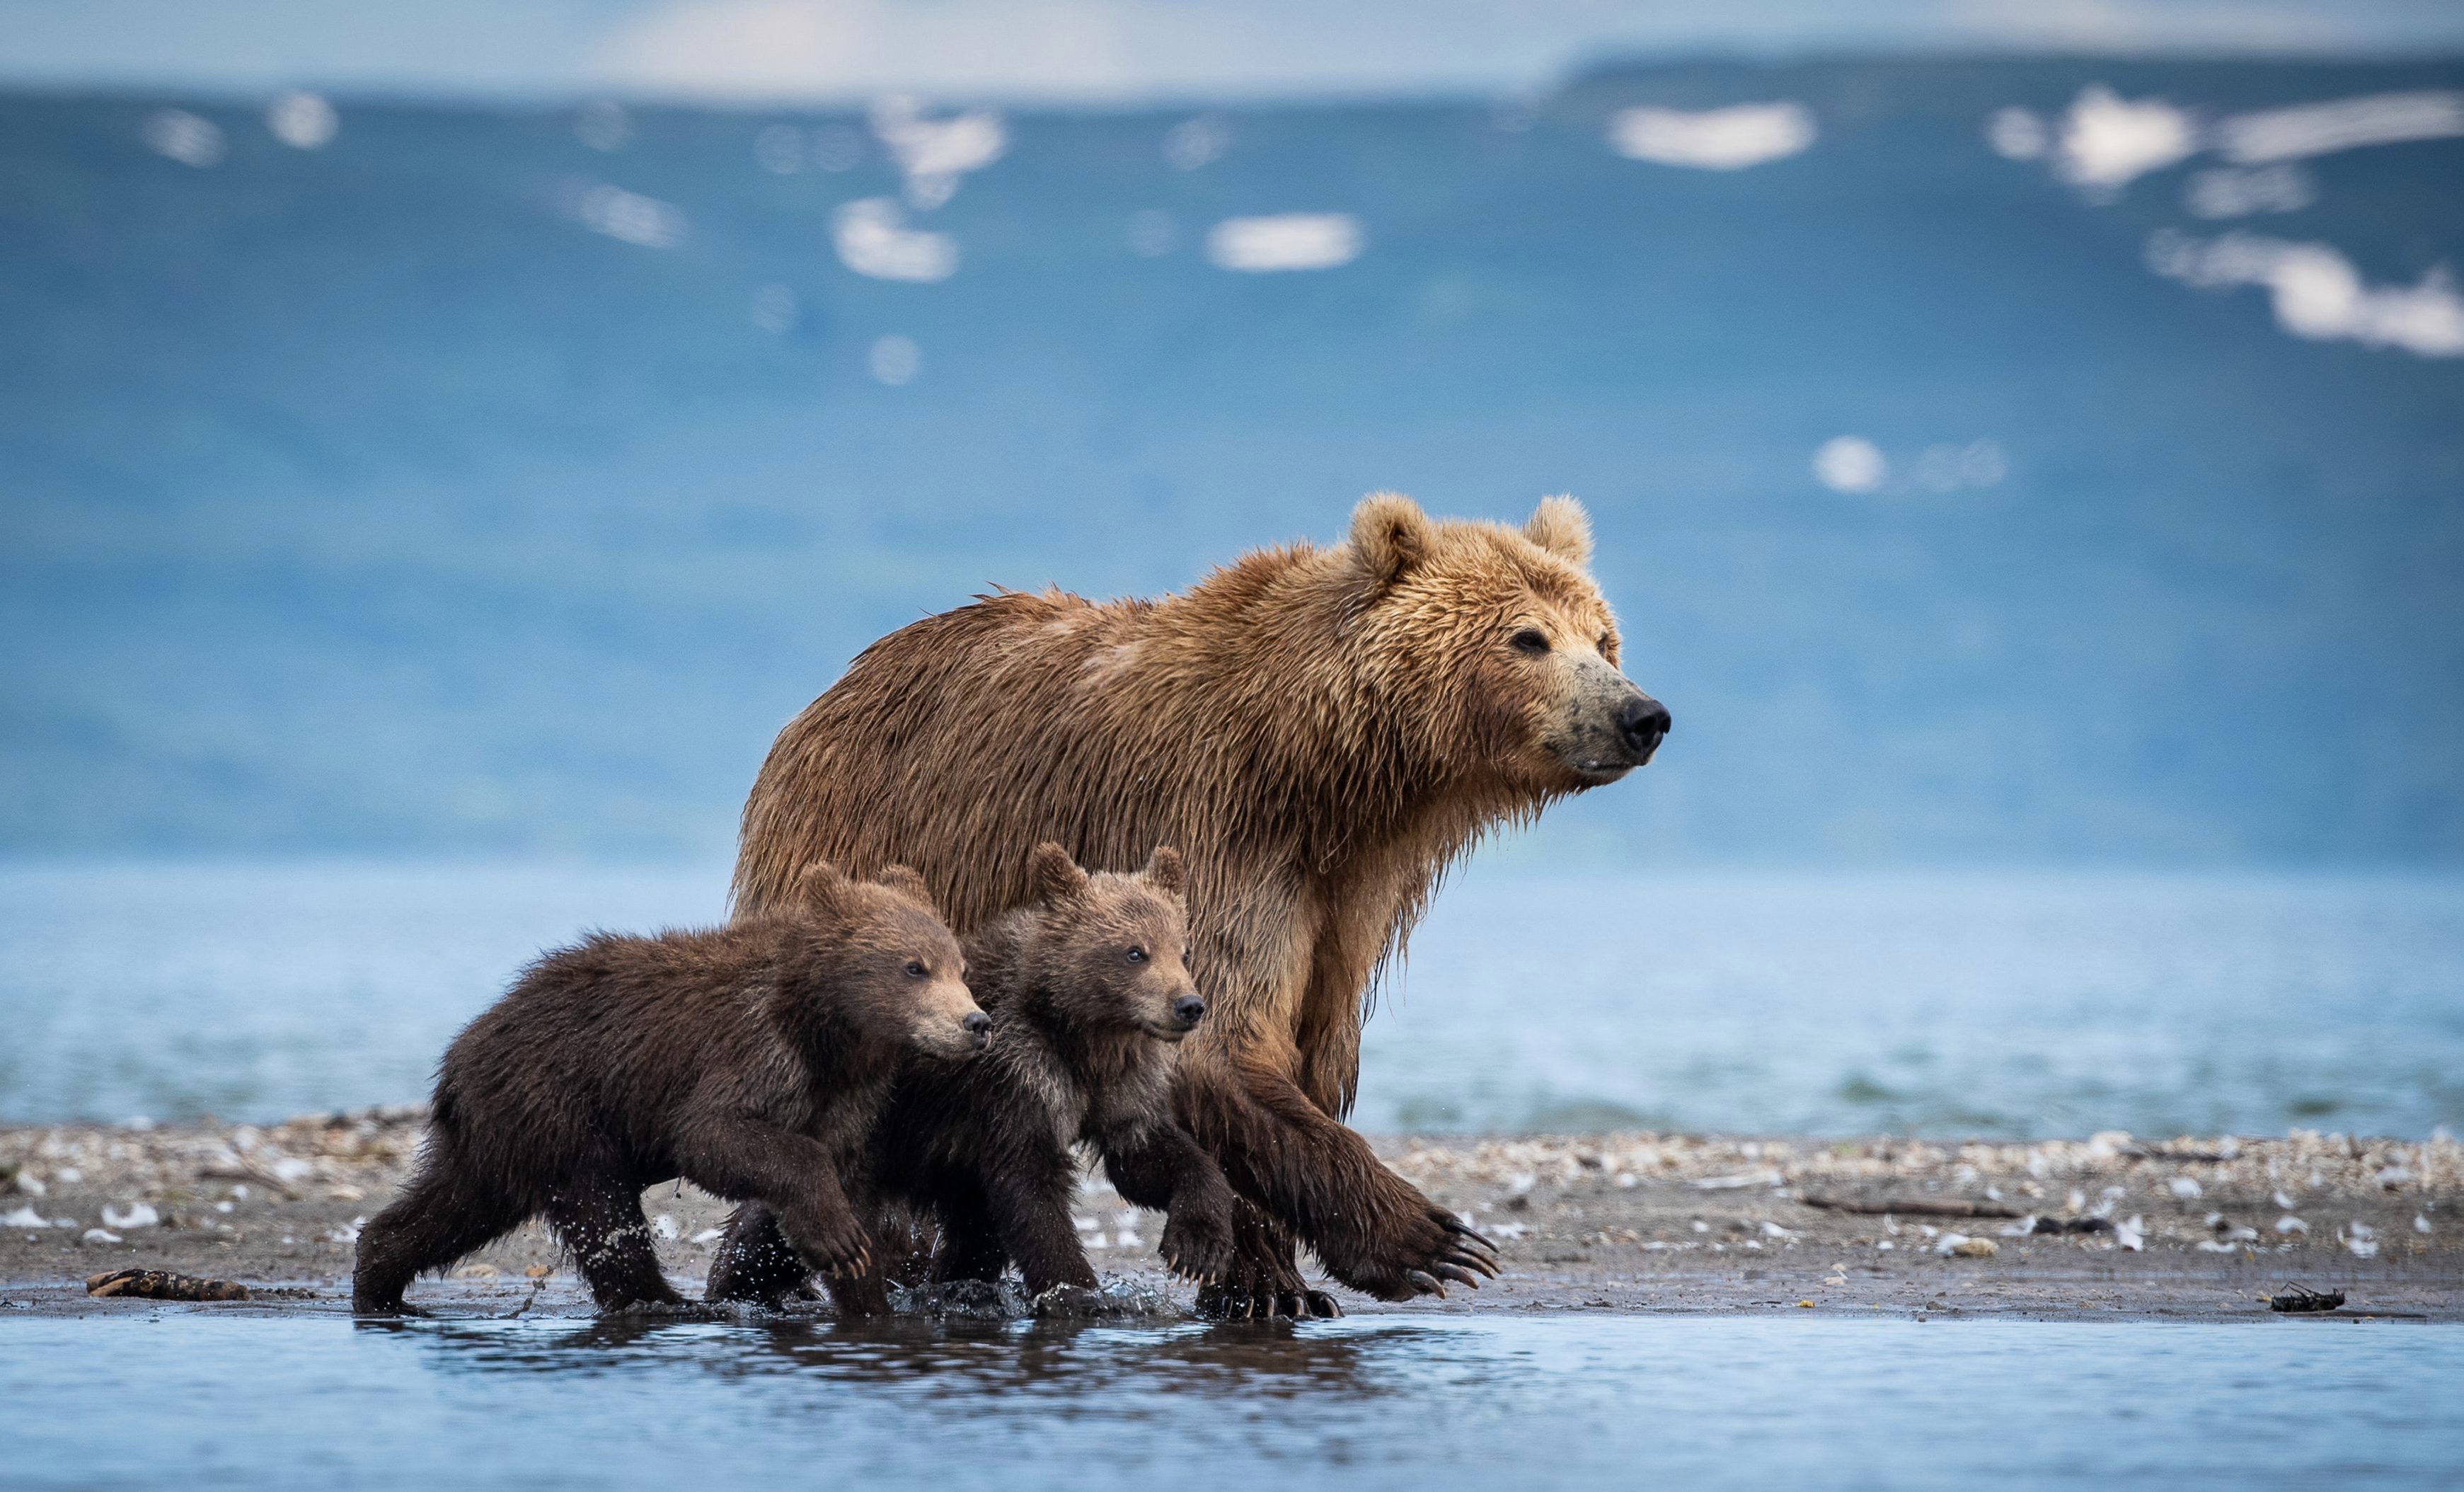 有爱!摄影师拍下熊一家三口温馨互动的画面